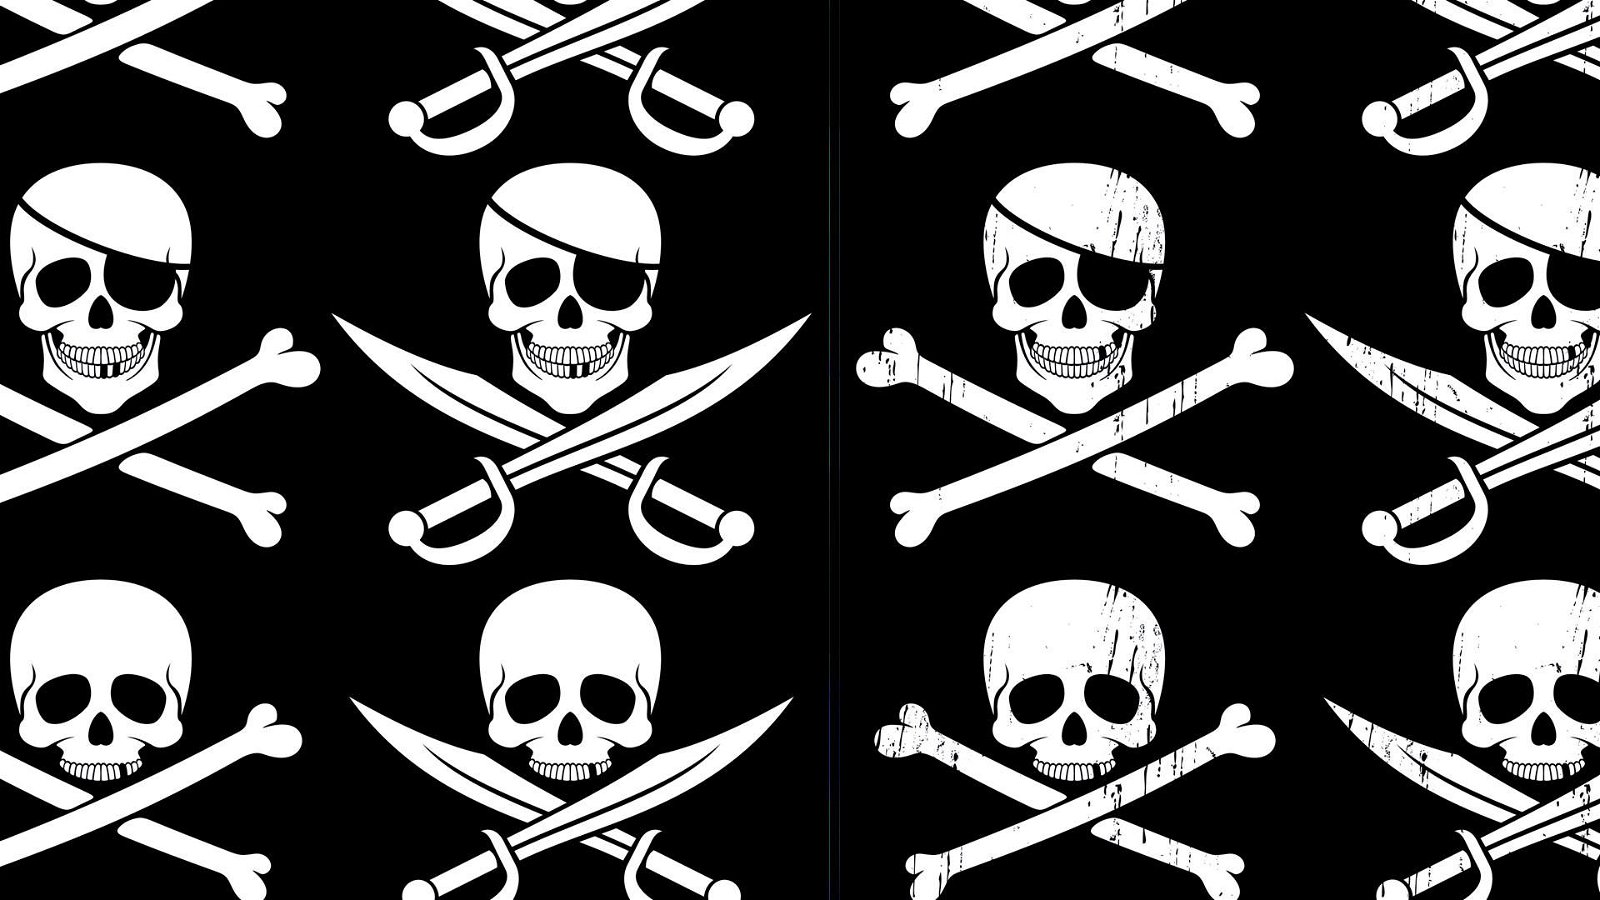 Immagine di The Pirate Bay vive ancora, il fenomeno culturale dietro il sito che nessuno riesce a chiudere